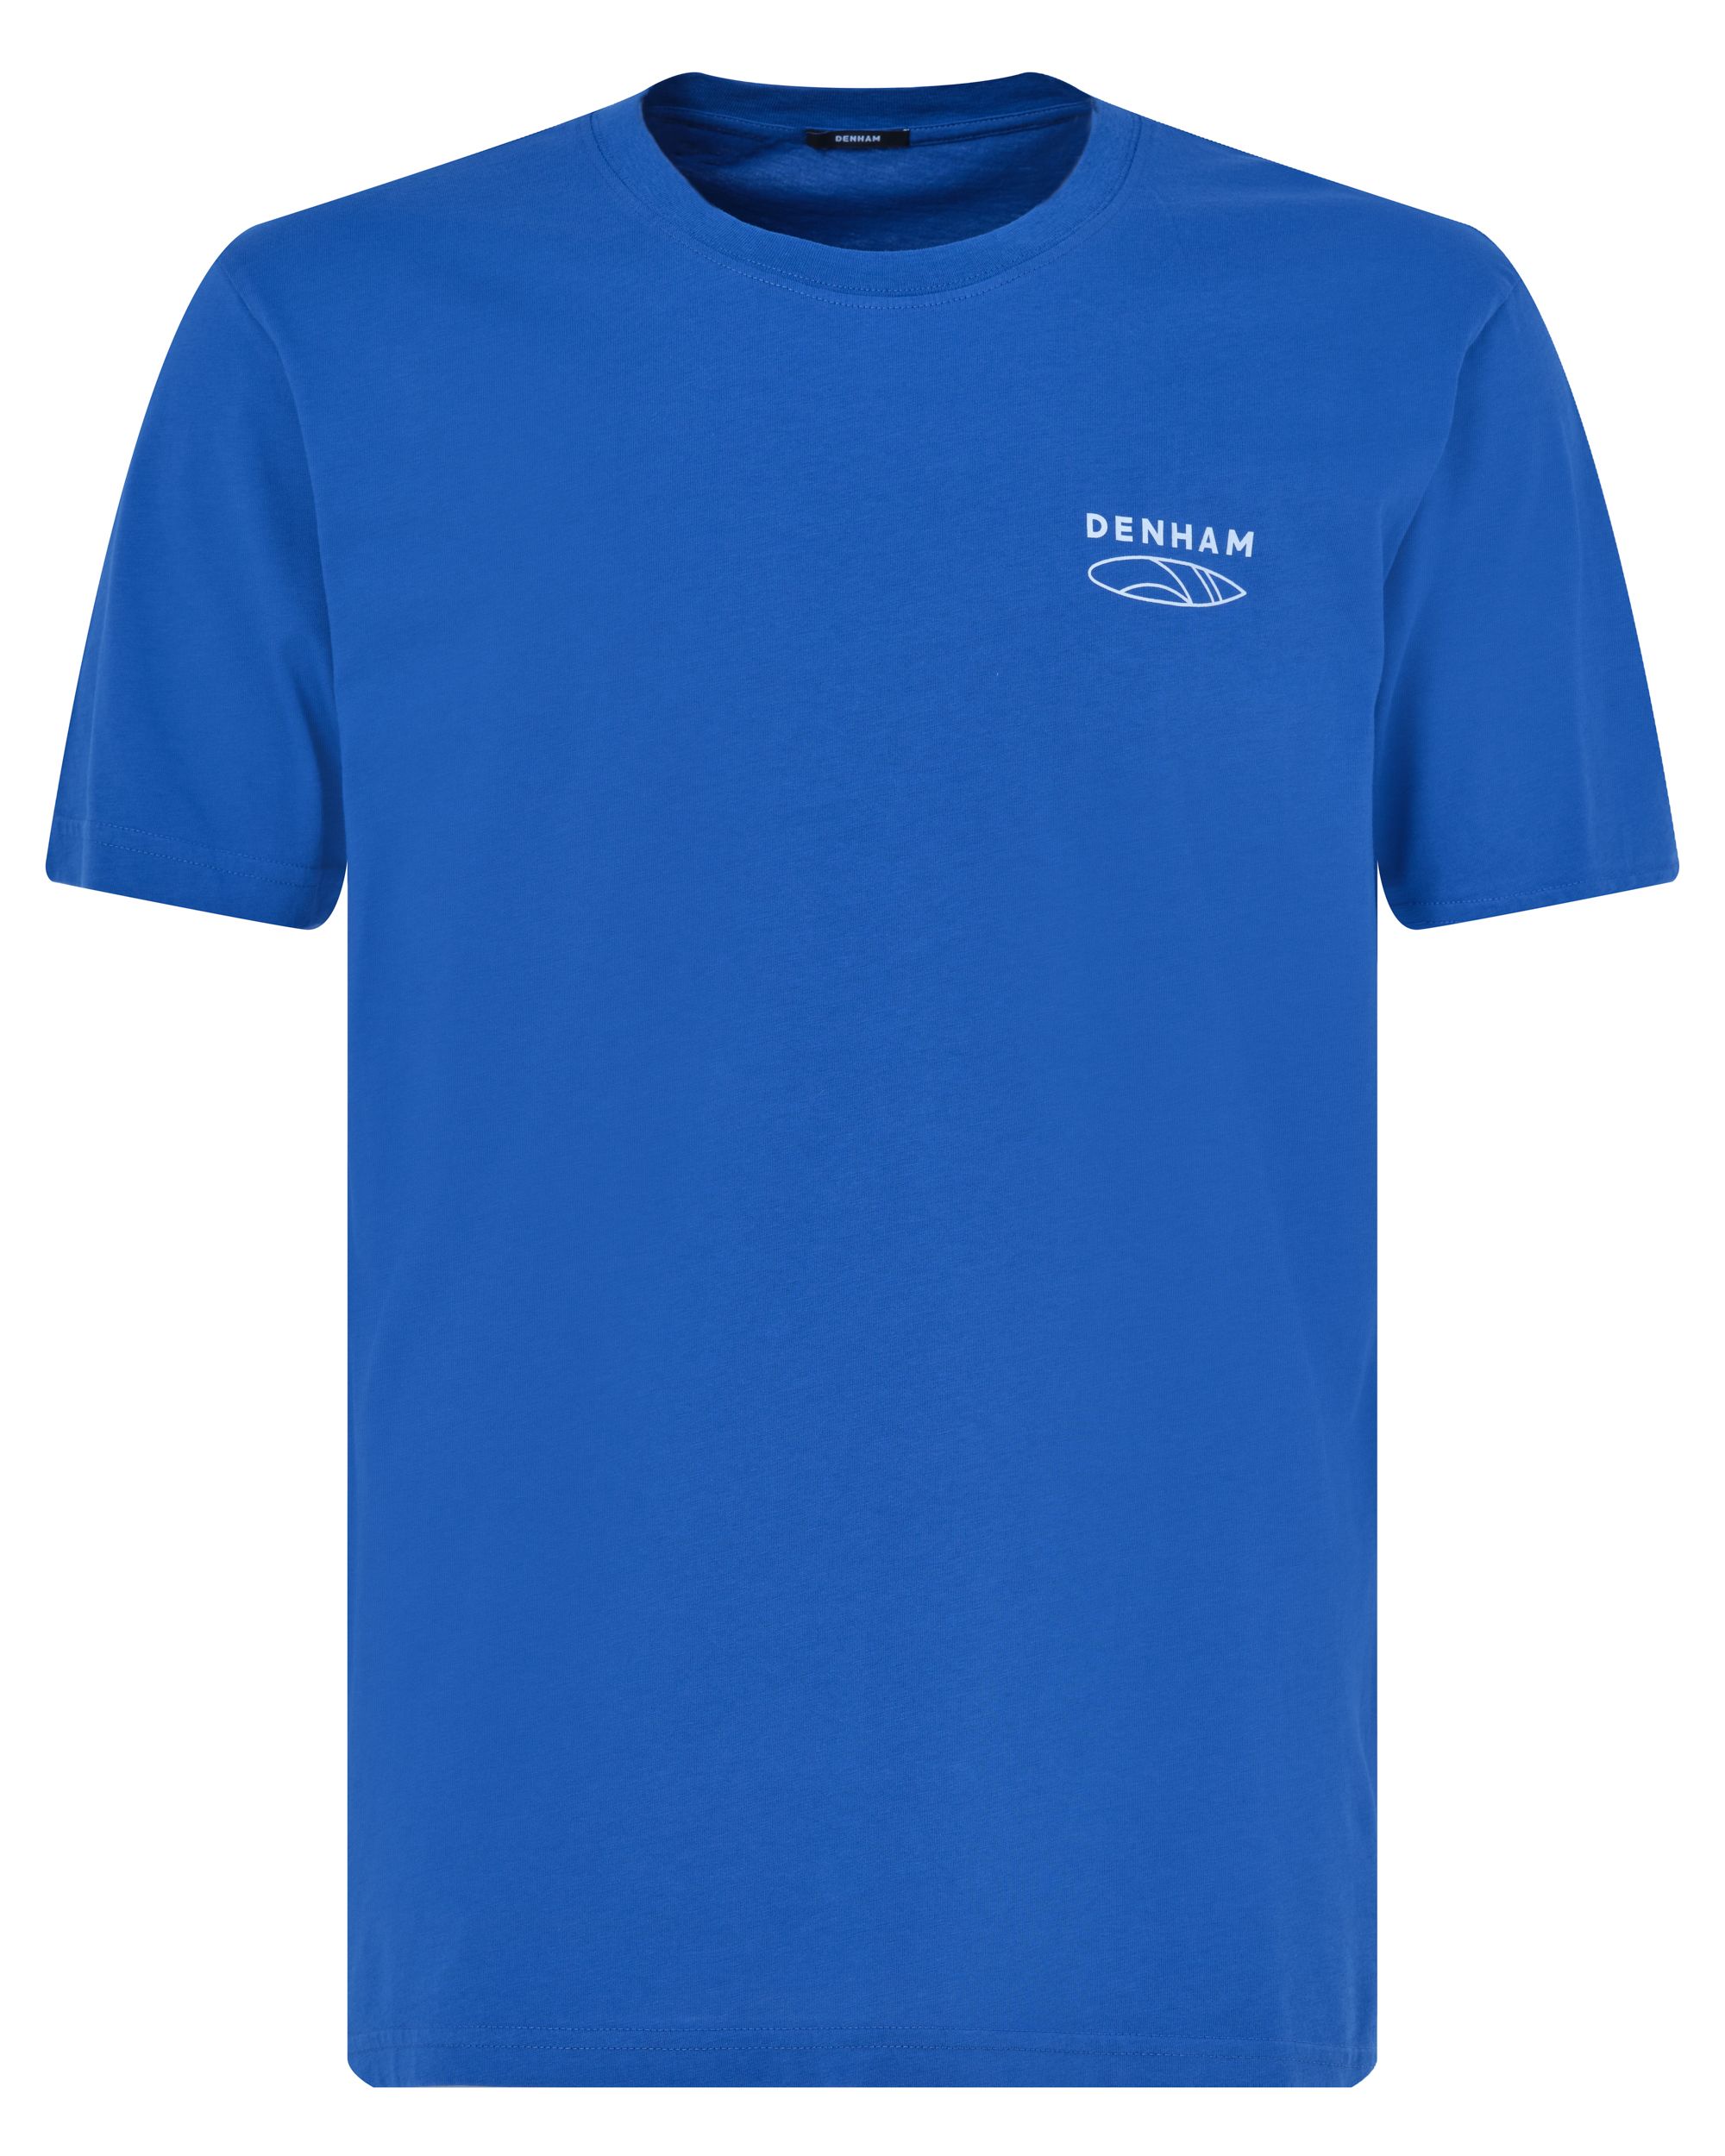 DENHAM Line Reg T-shirt KM Kobalt 089105-001-L